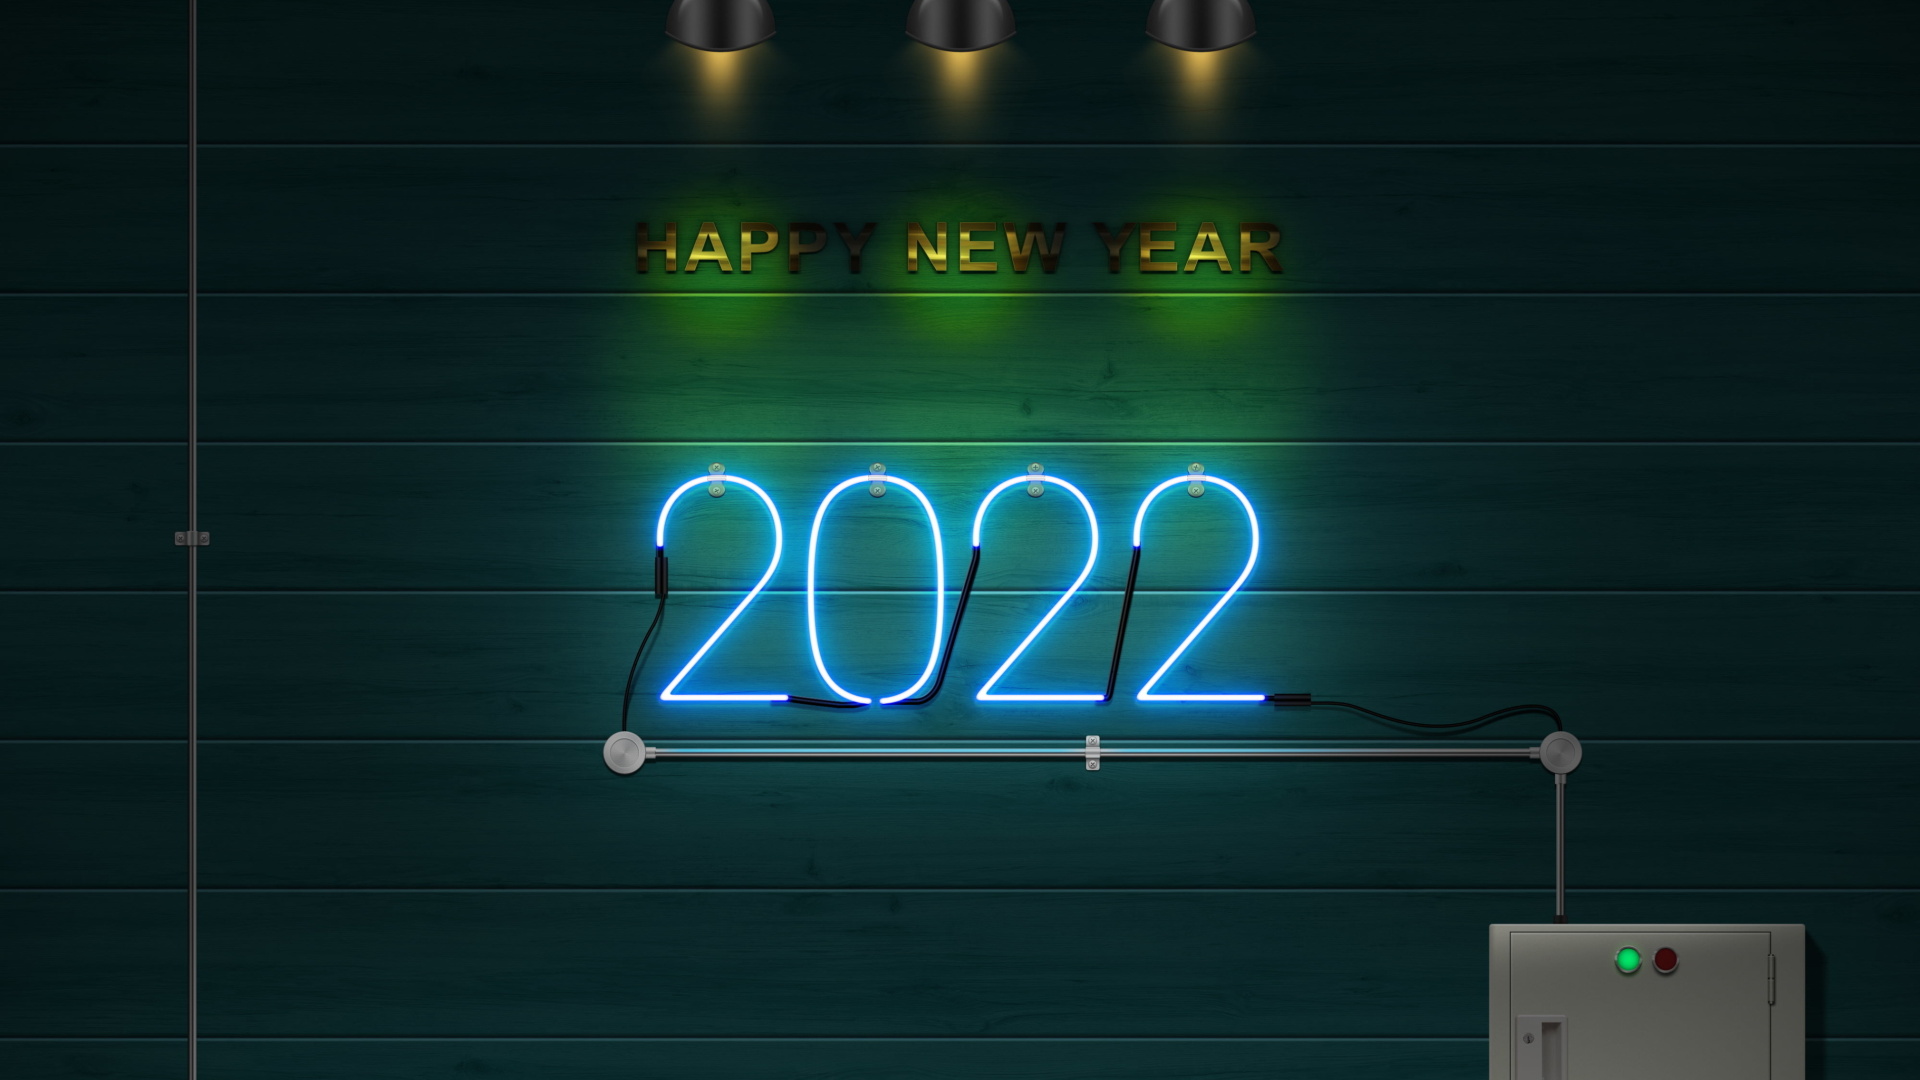 Happy New Year 2022 Photo screenshot #1 1920x1080